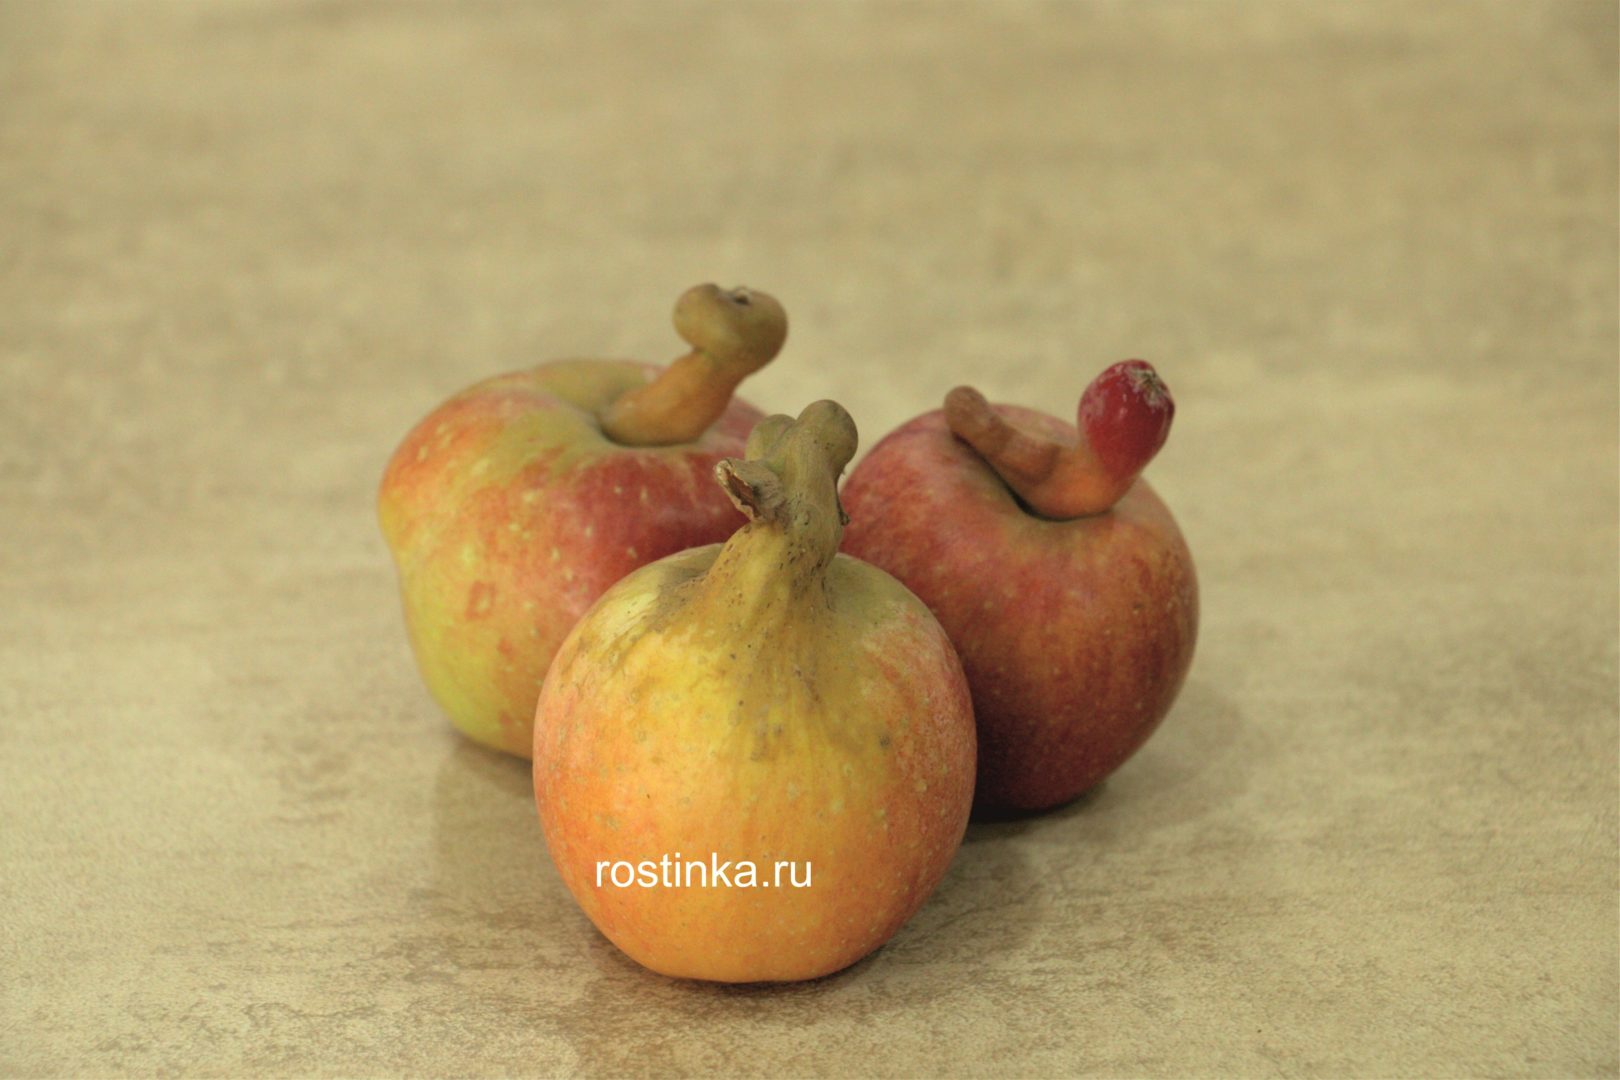 У яблока уродливая толстая ножка - мутации